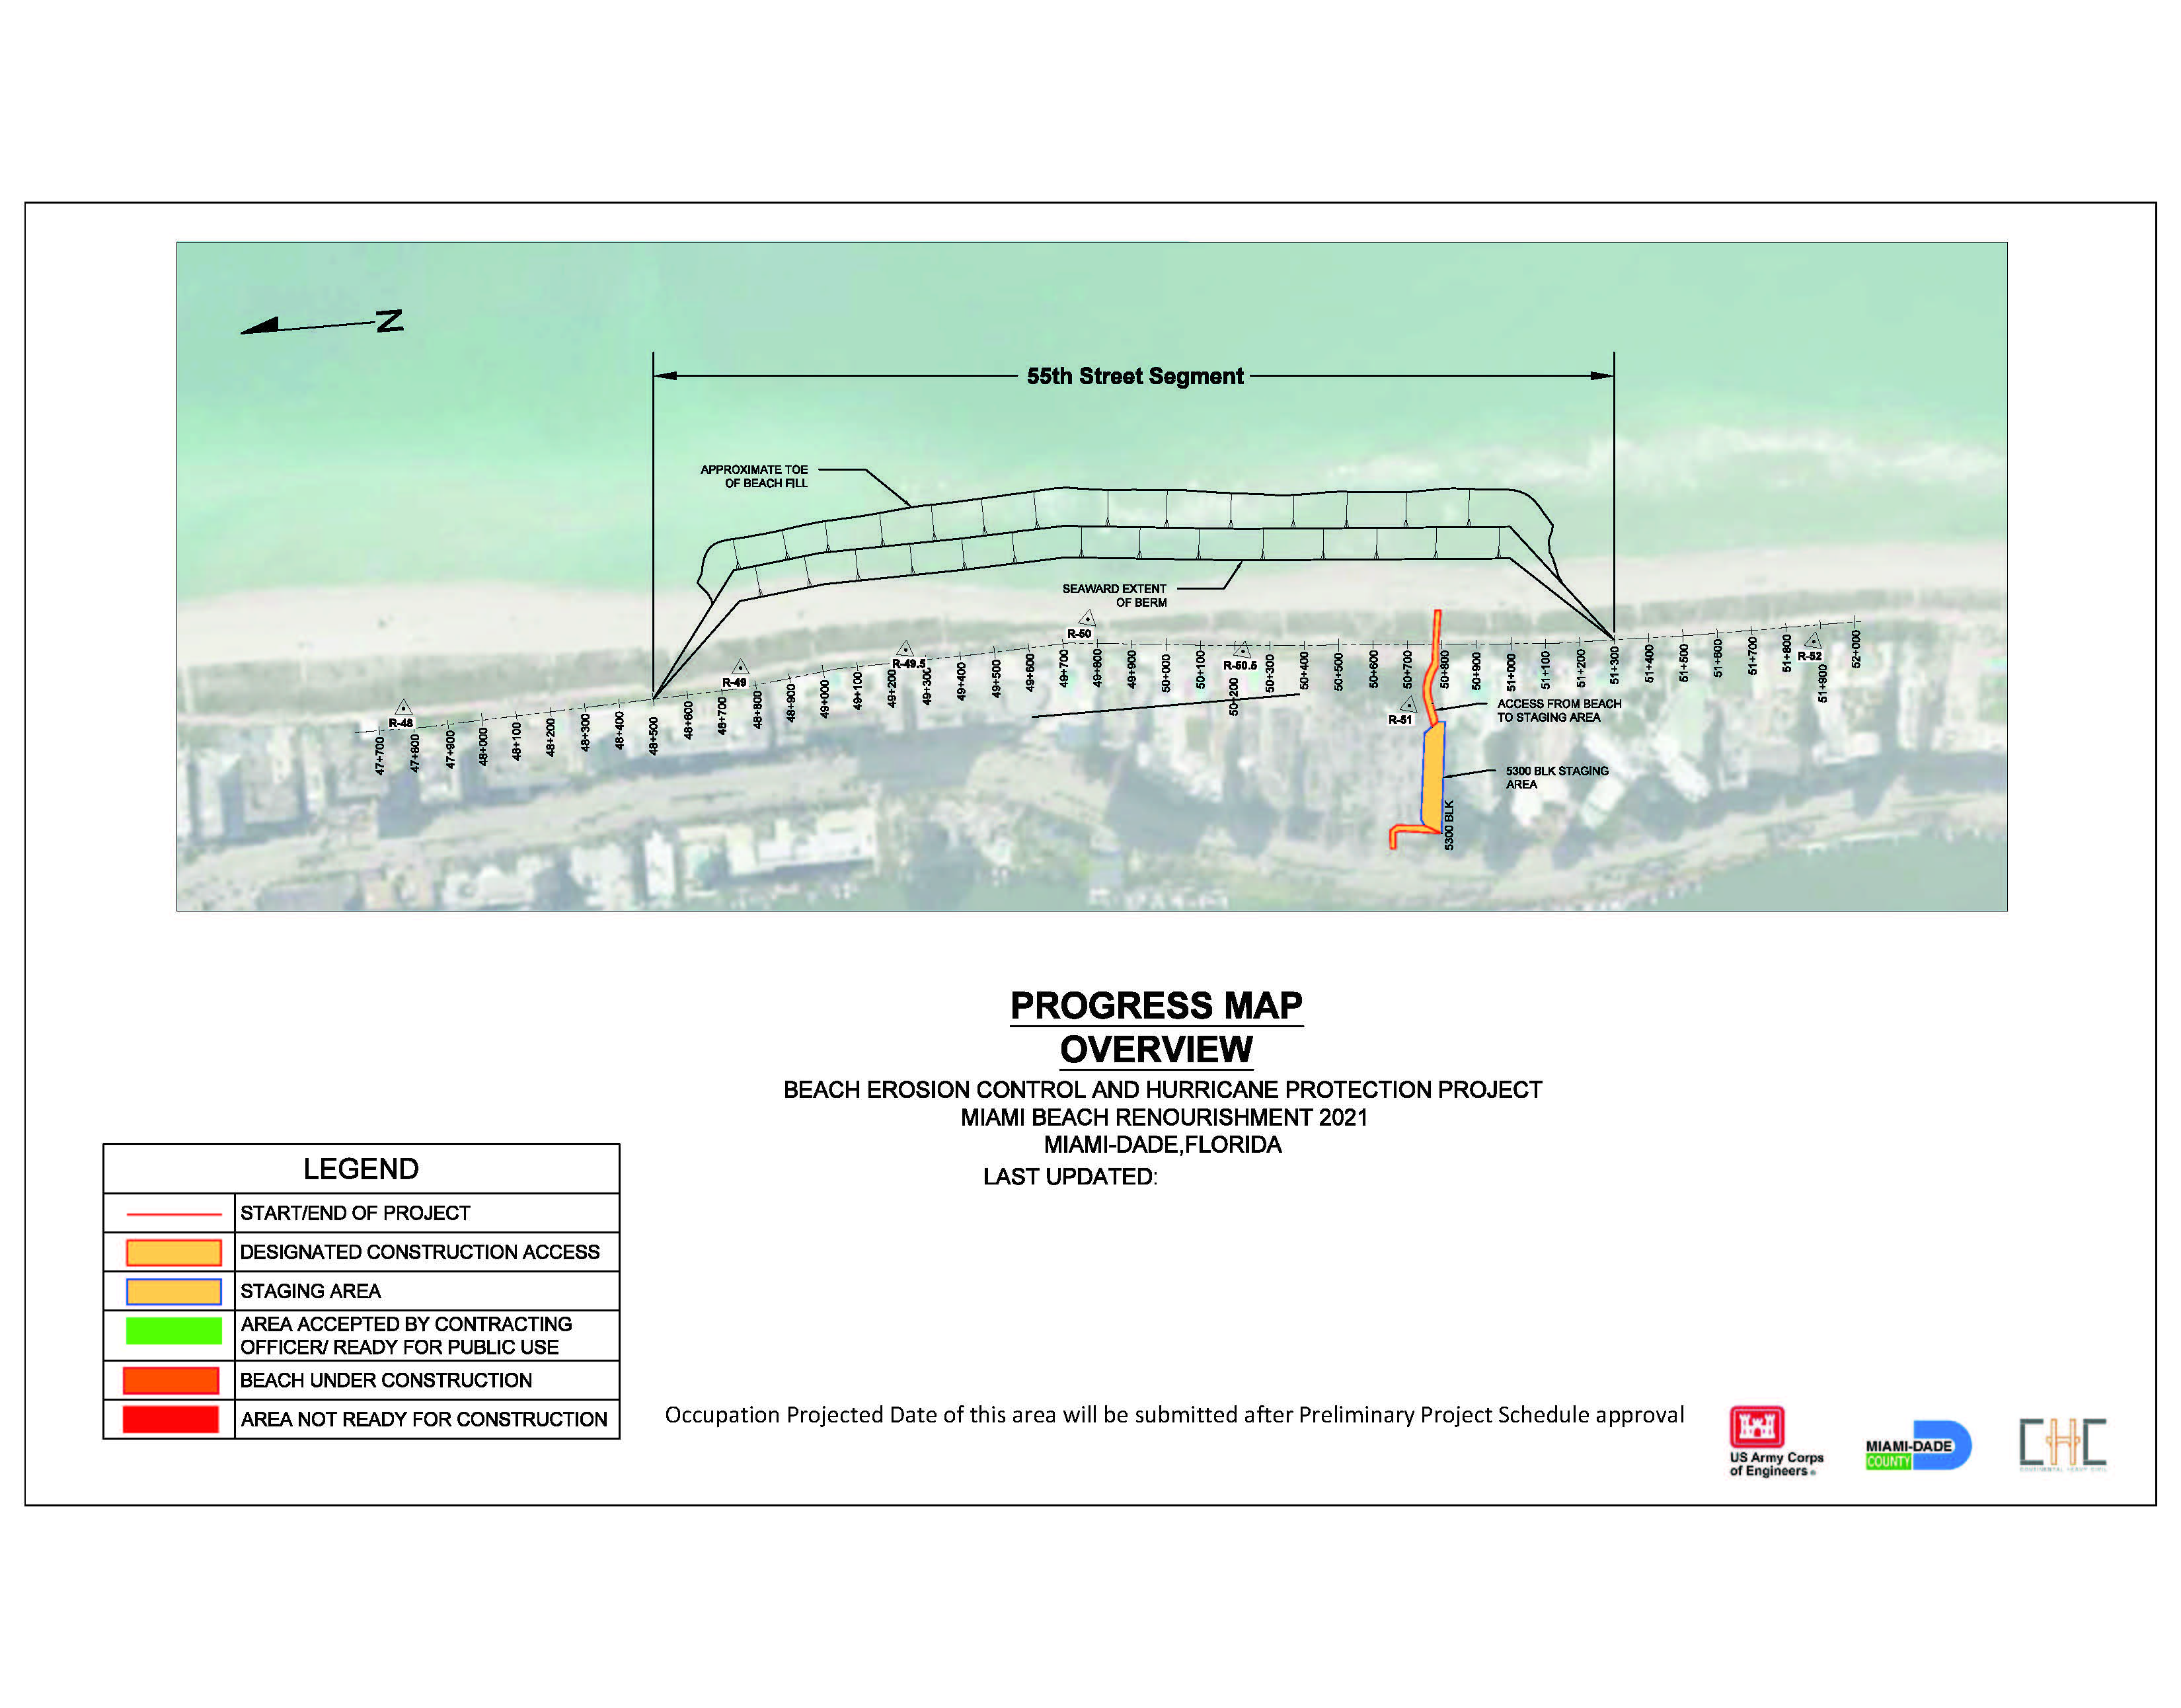 Map showing the 2021 Miami Beach Renourishment Project 55th Street Segment